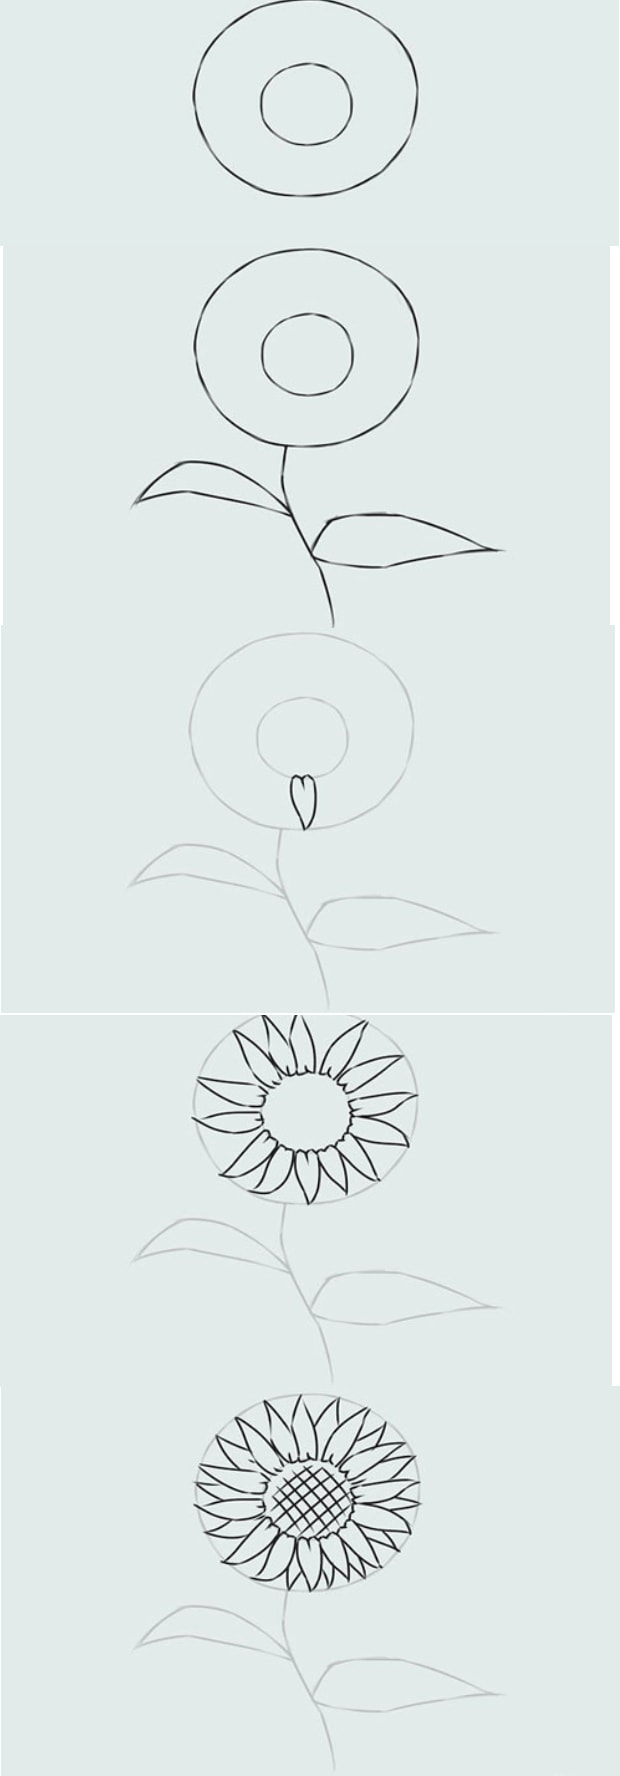 Hoa Hướng Dương: Ý Nghĩa, Vector, Cách Vẽ Hoa Hướng Dương Đẹp - Vndoc.Com